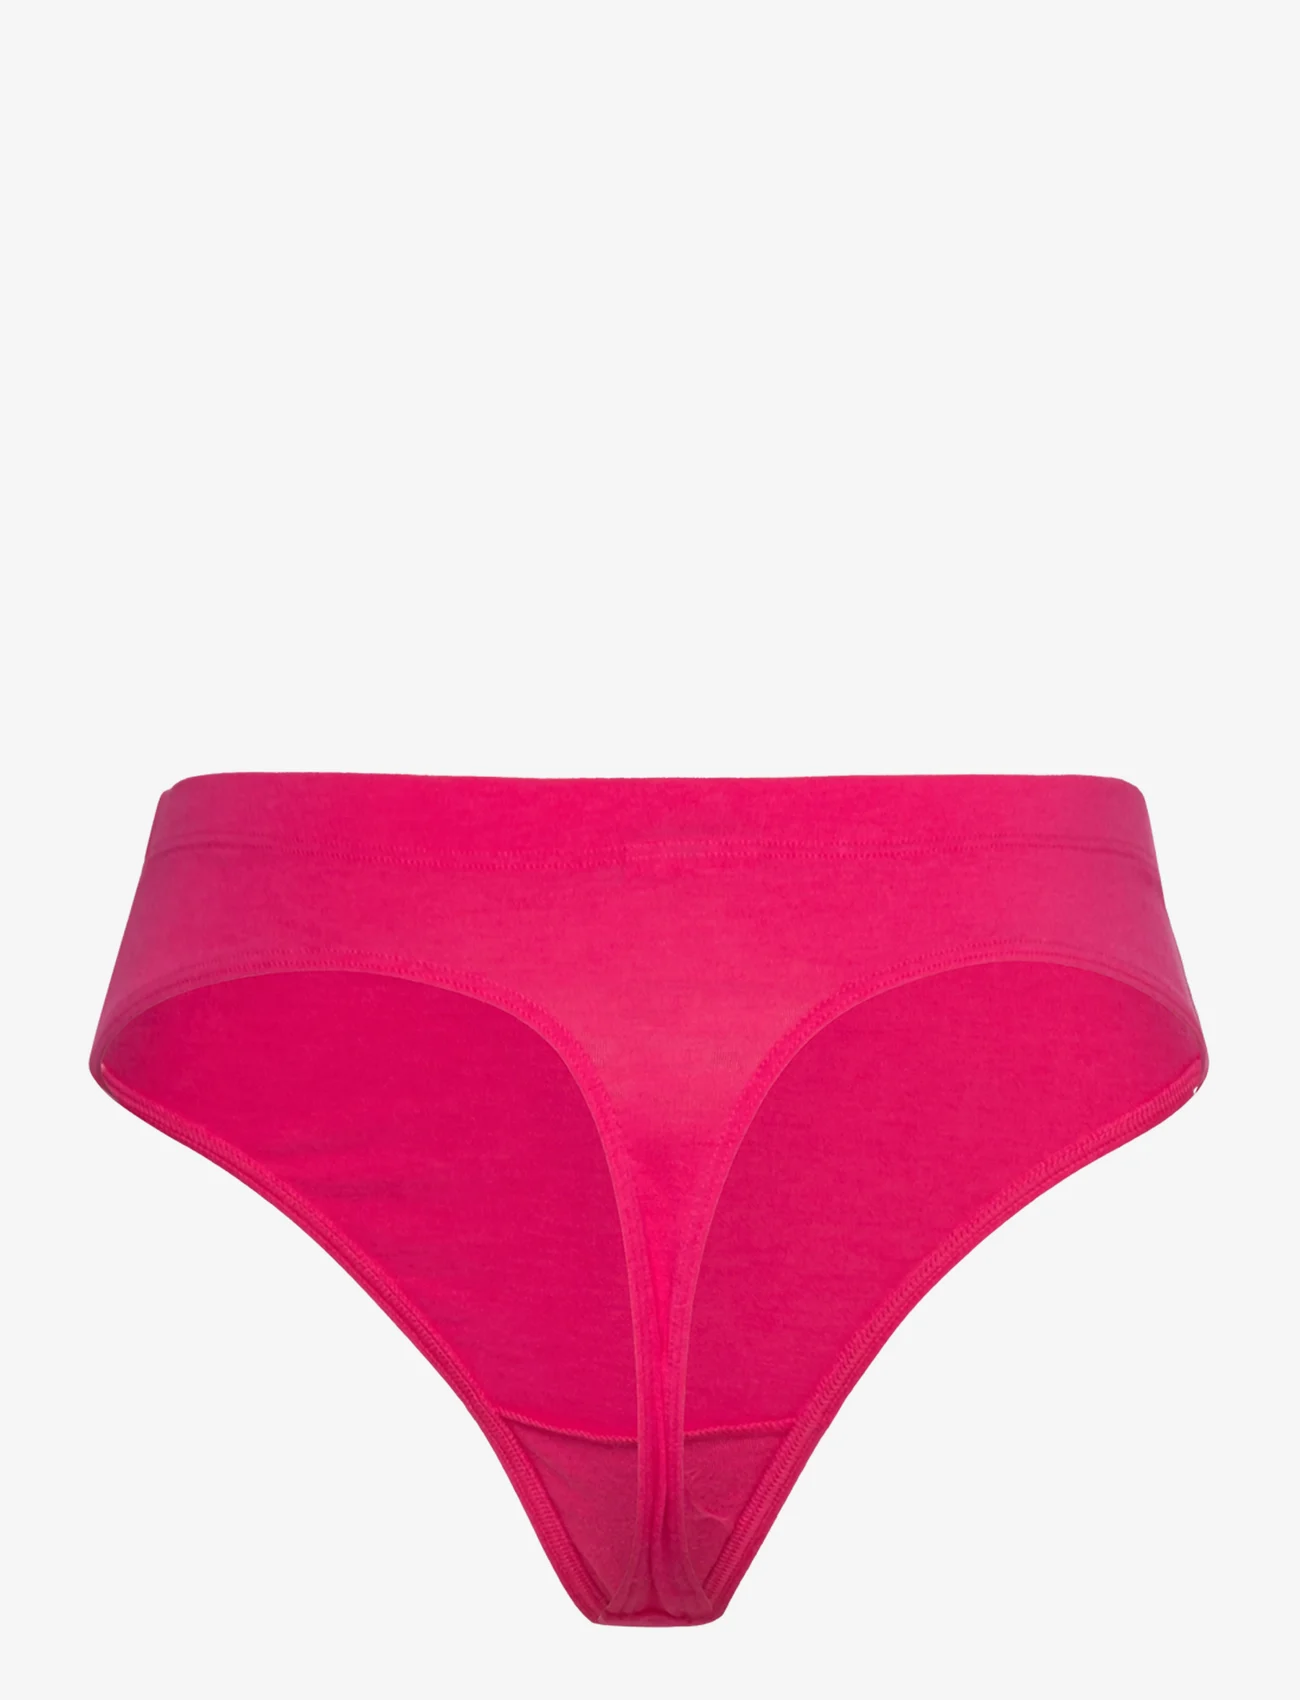 adidas Originals Underwear - Thong - die niedrigsten preise - aubergine - 1